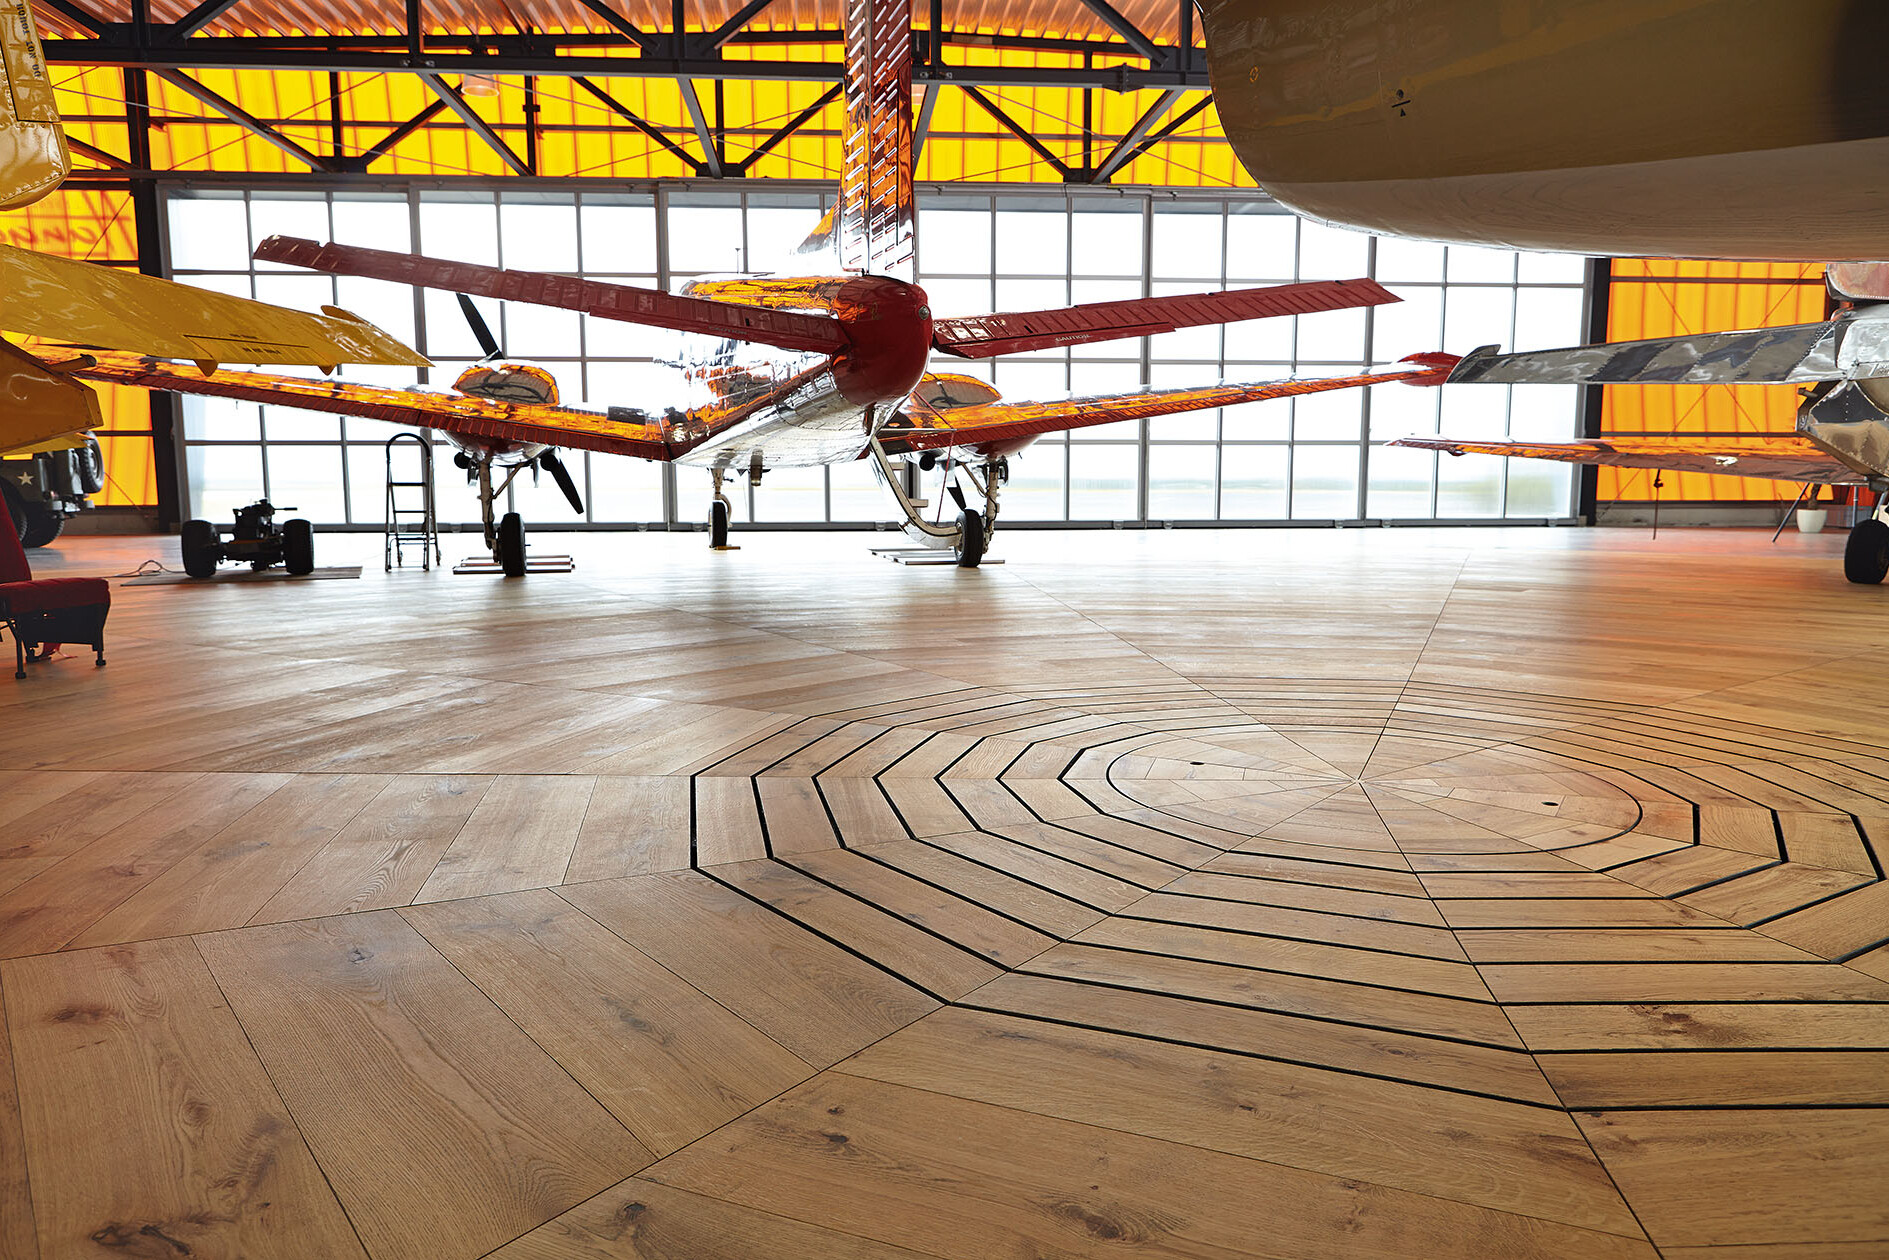 Lindura-Holzboden als Bühne für historische Flugzeuge